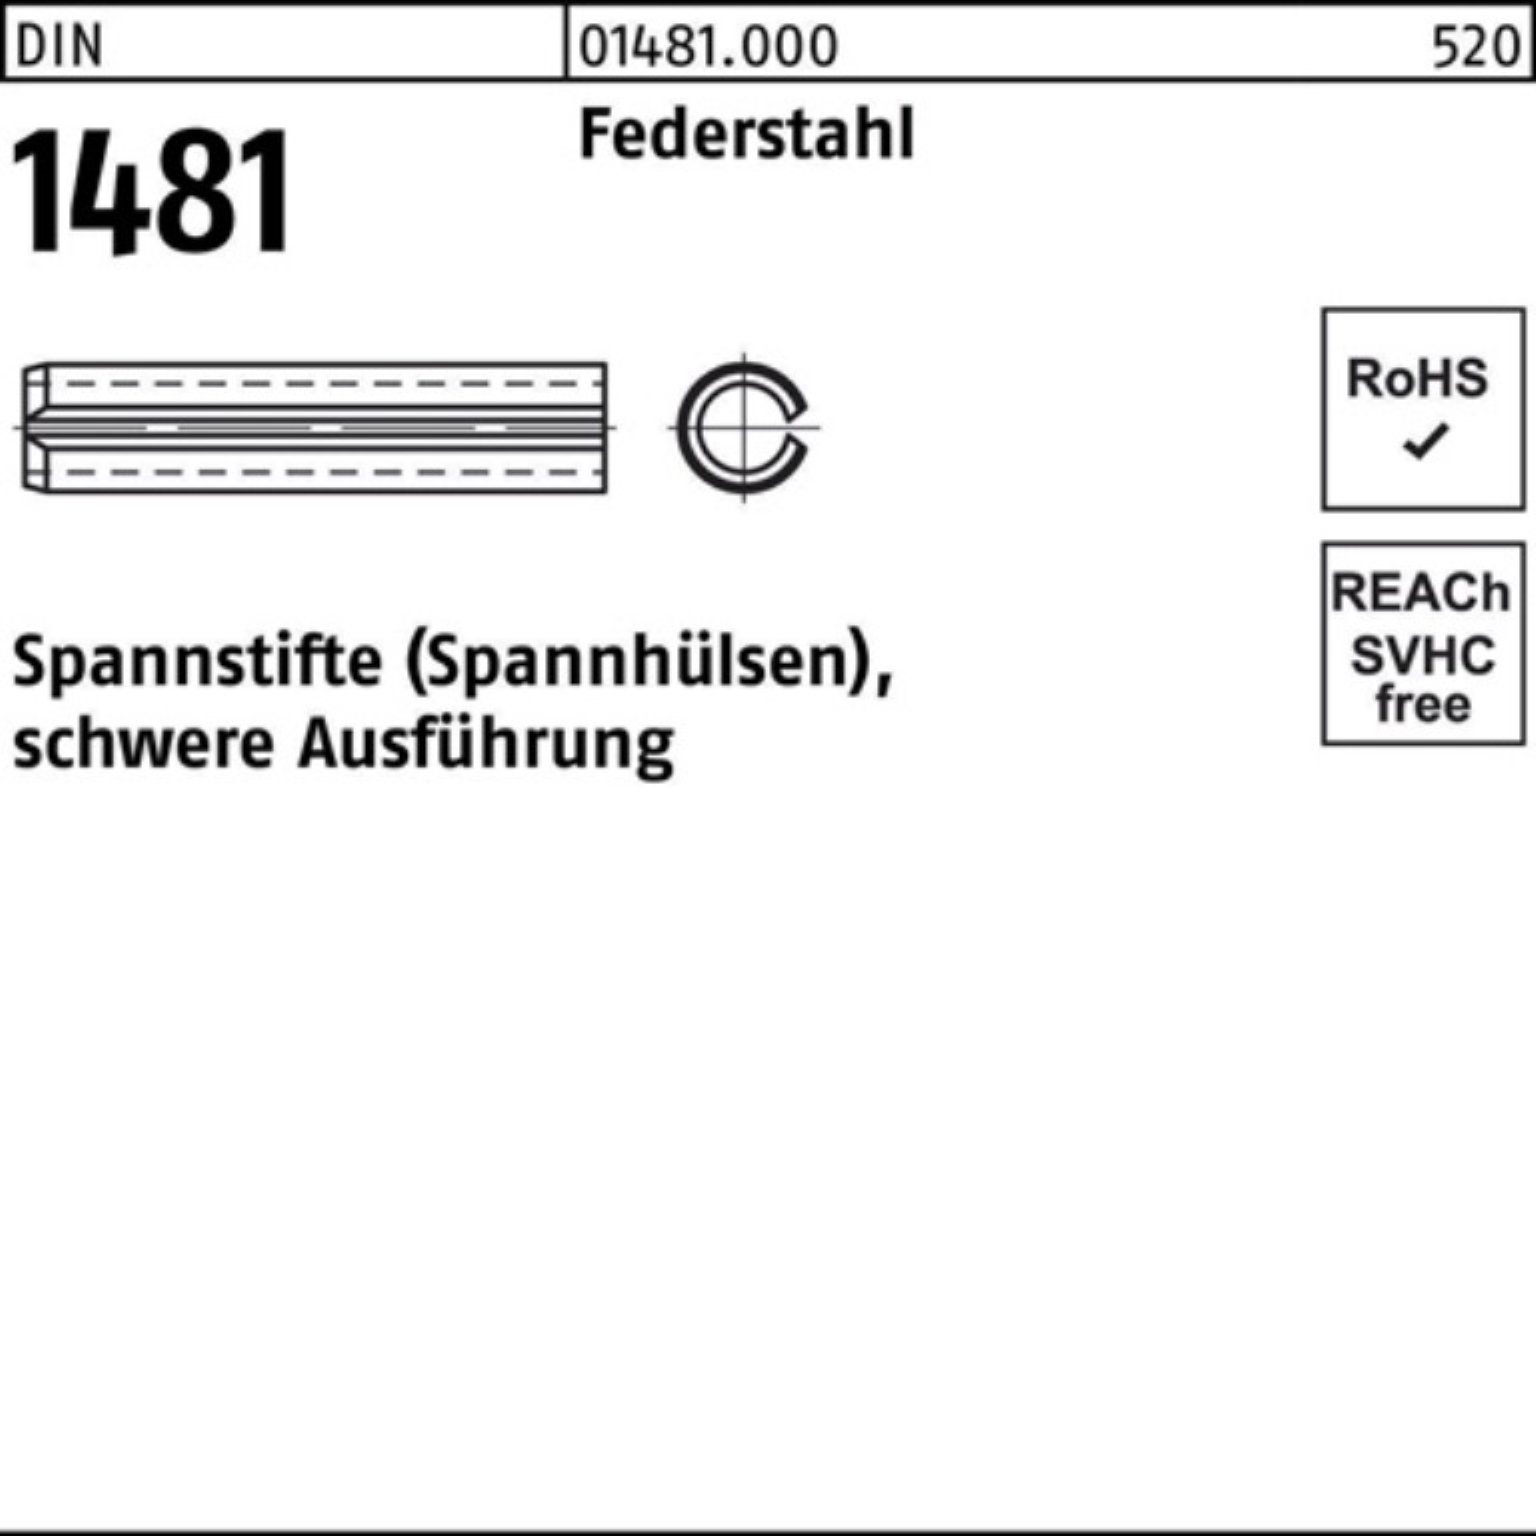 Reyher Spannstift 100er Pack Spannstift DIN 1481 10x 14 Federstahl schwere Ausführung 1